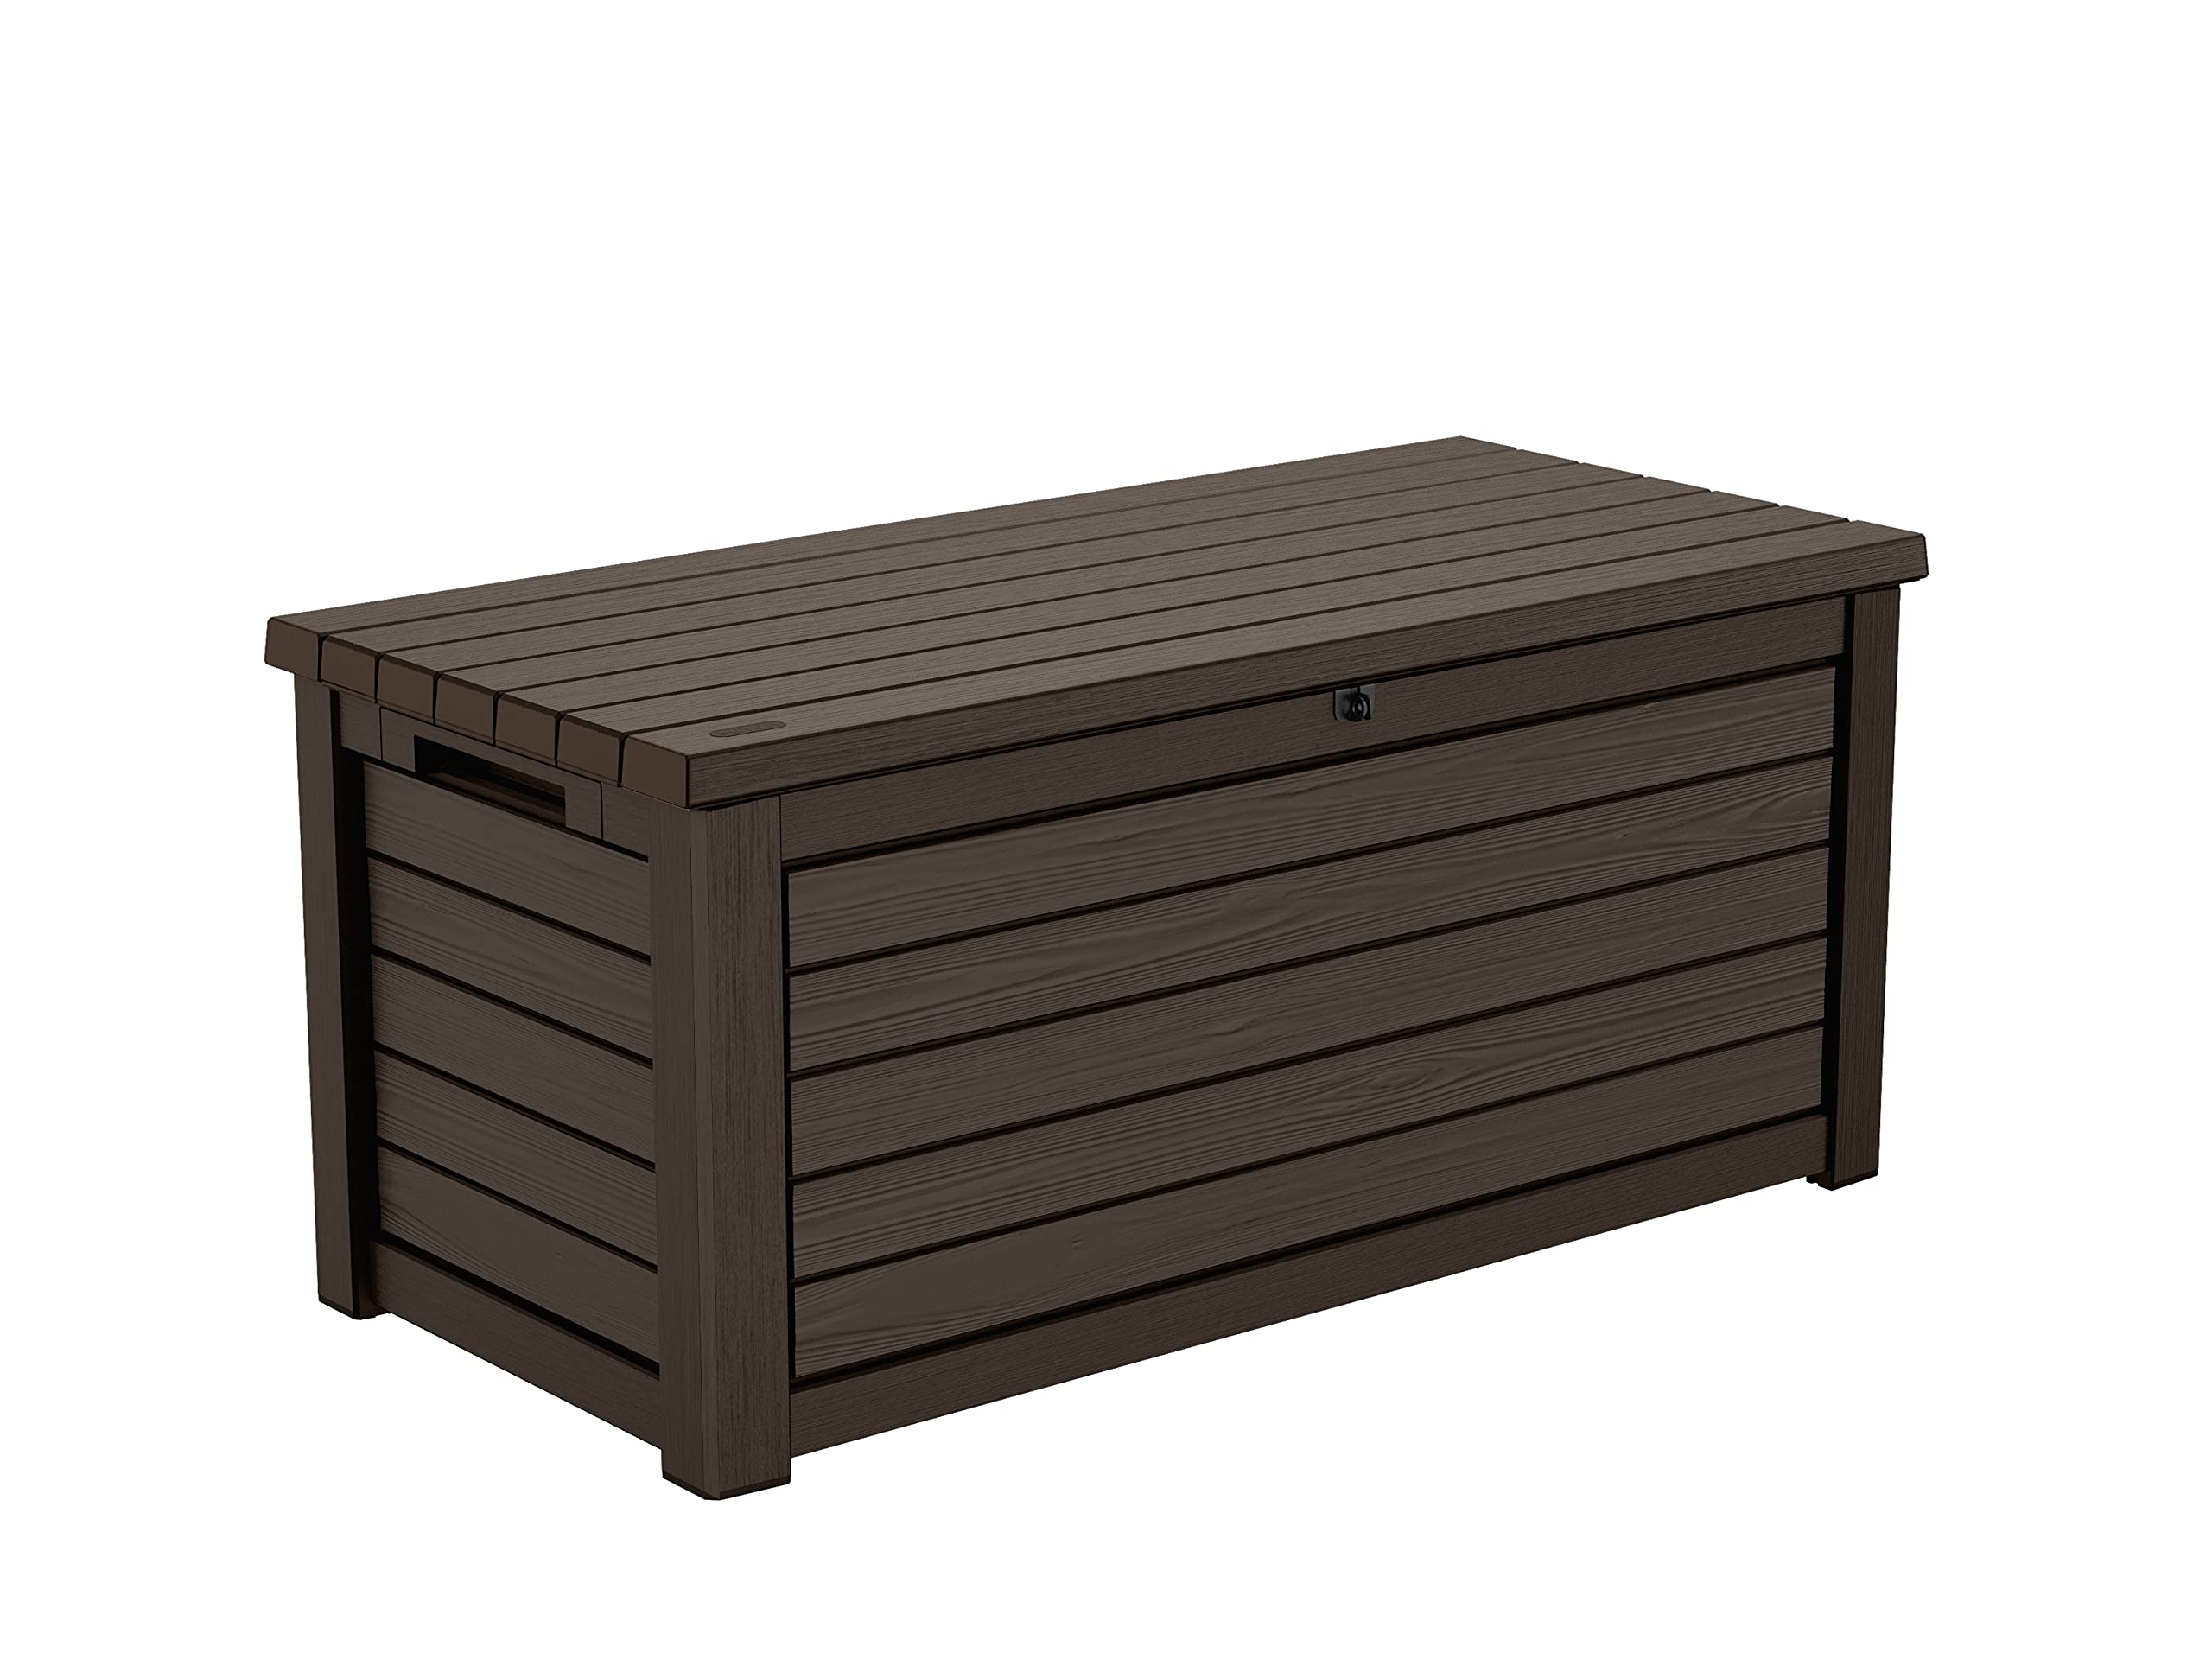 Koll Living Gartenbox/Aufbewahrungsbox 623 Liter, schwarz, weiß oder braun - trockener & belüfteter Stauraum - mit Gasdruckfedern - Deckel bis zu 272 kg belastbar (Braun)